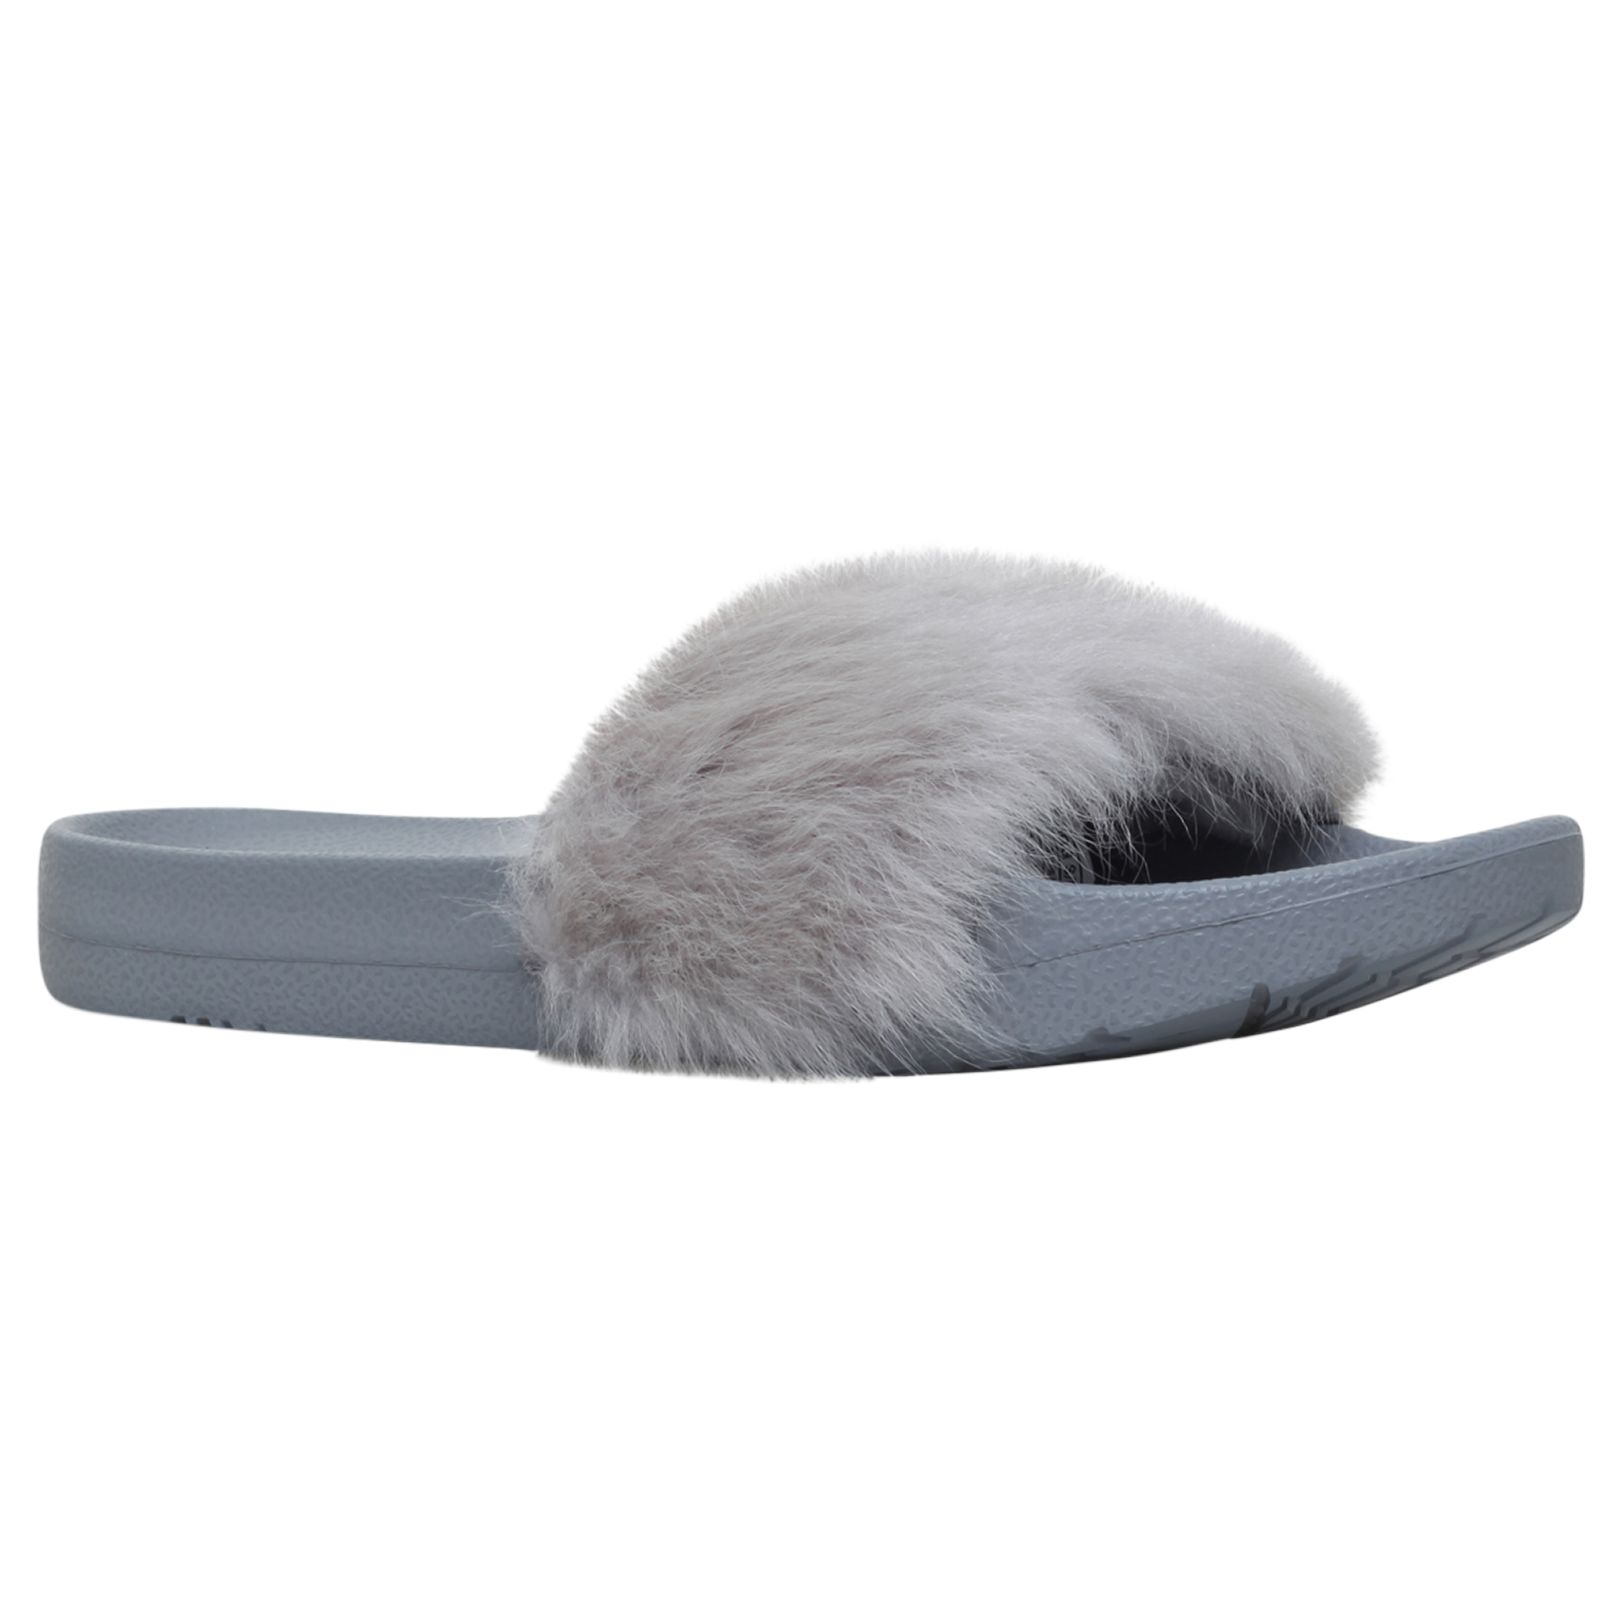 UGG Royale Sheepskin Slider Sandals, Grey, 7